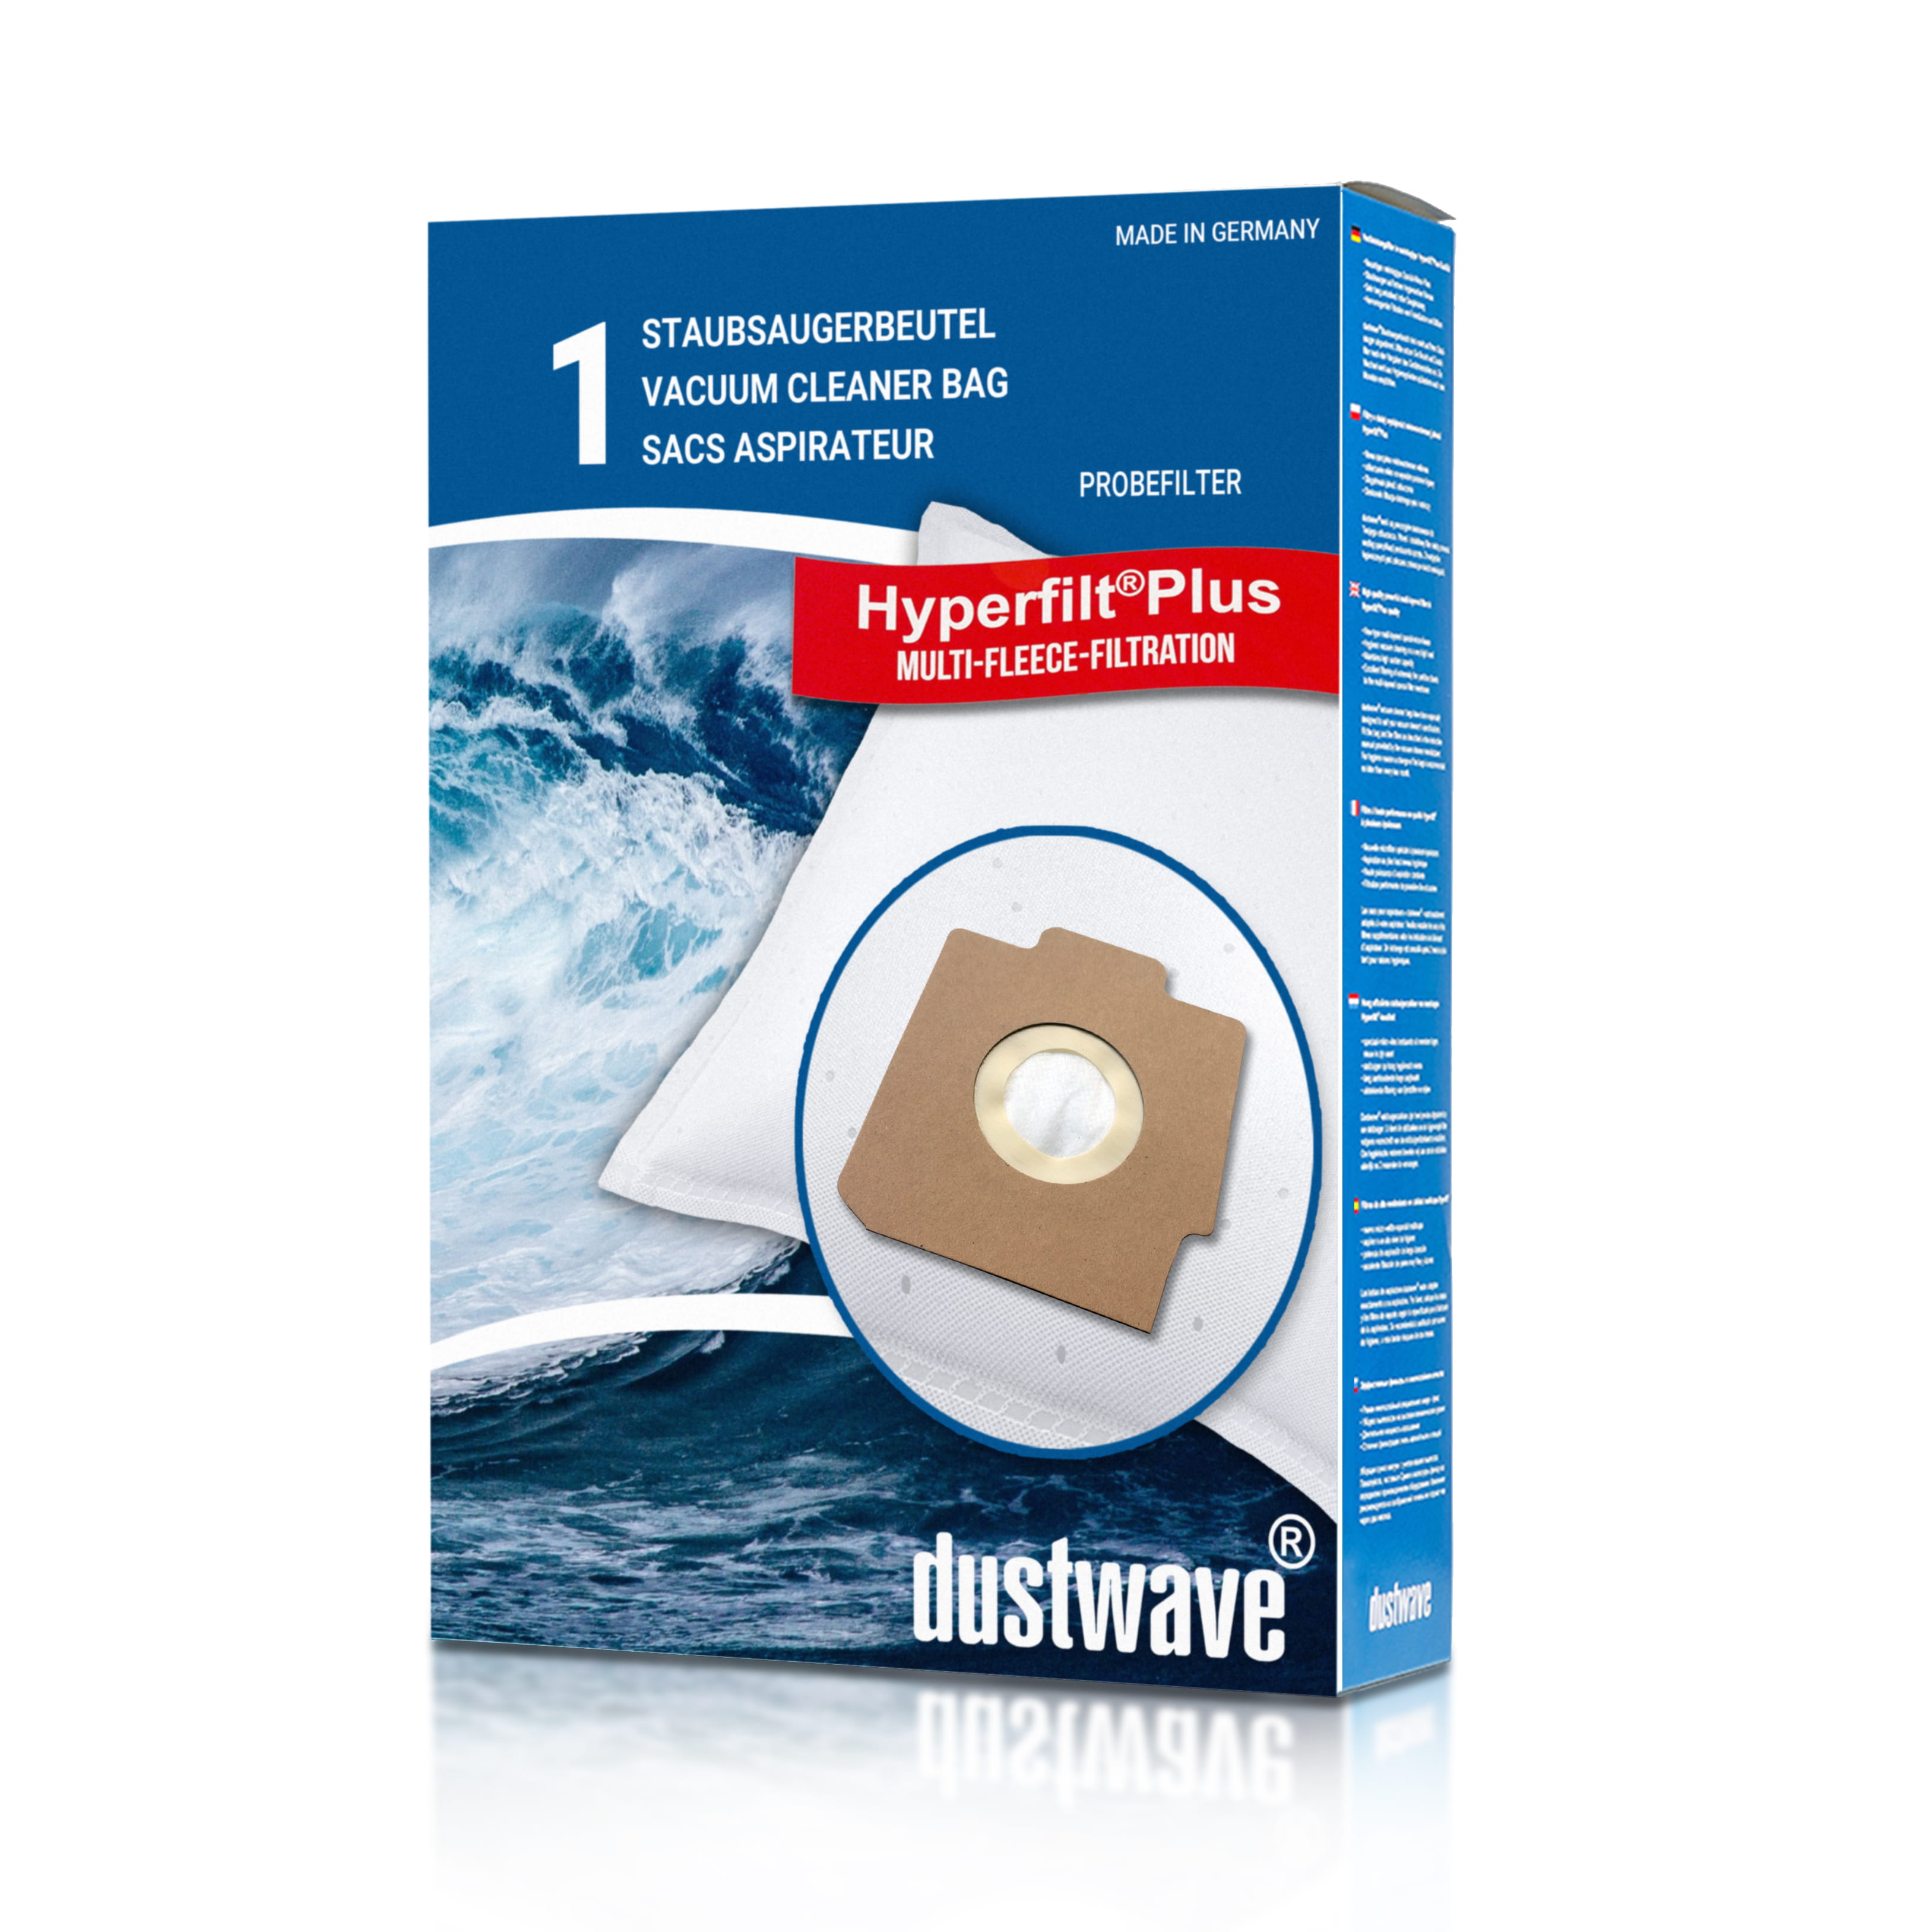 Dustwave® 1 Staubsaugerbeutel für Hoover H 32 / H32 - hocheffizient, mehrlagiges Mikrovlies mit Hygieneverschluss - Made in Germany